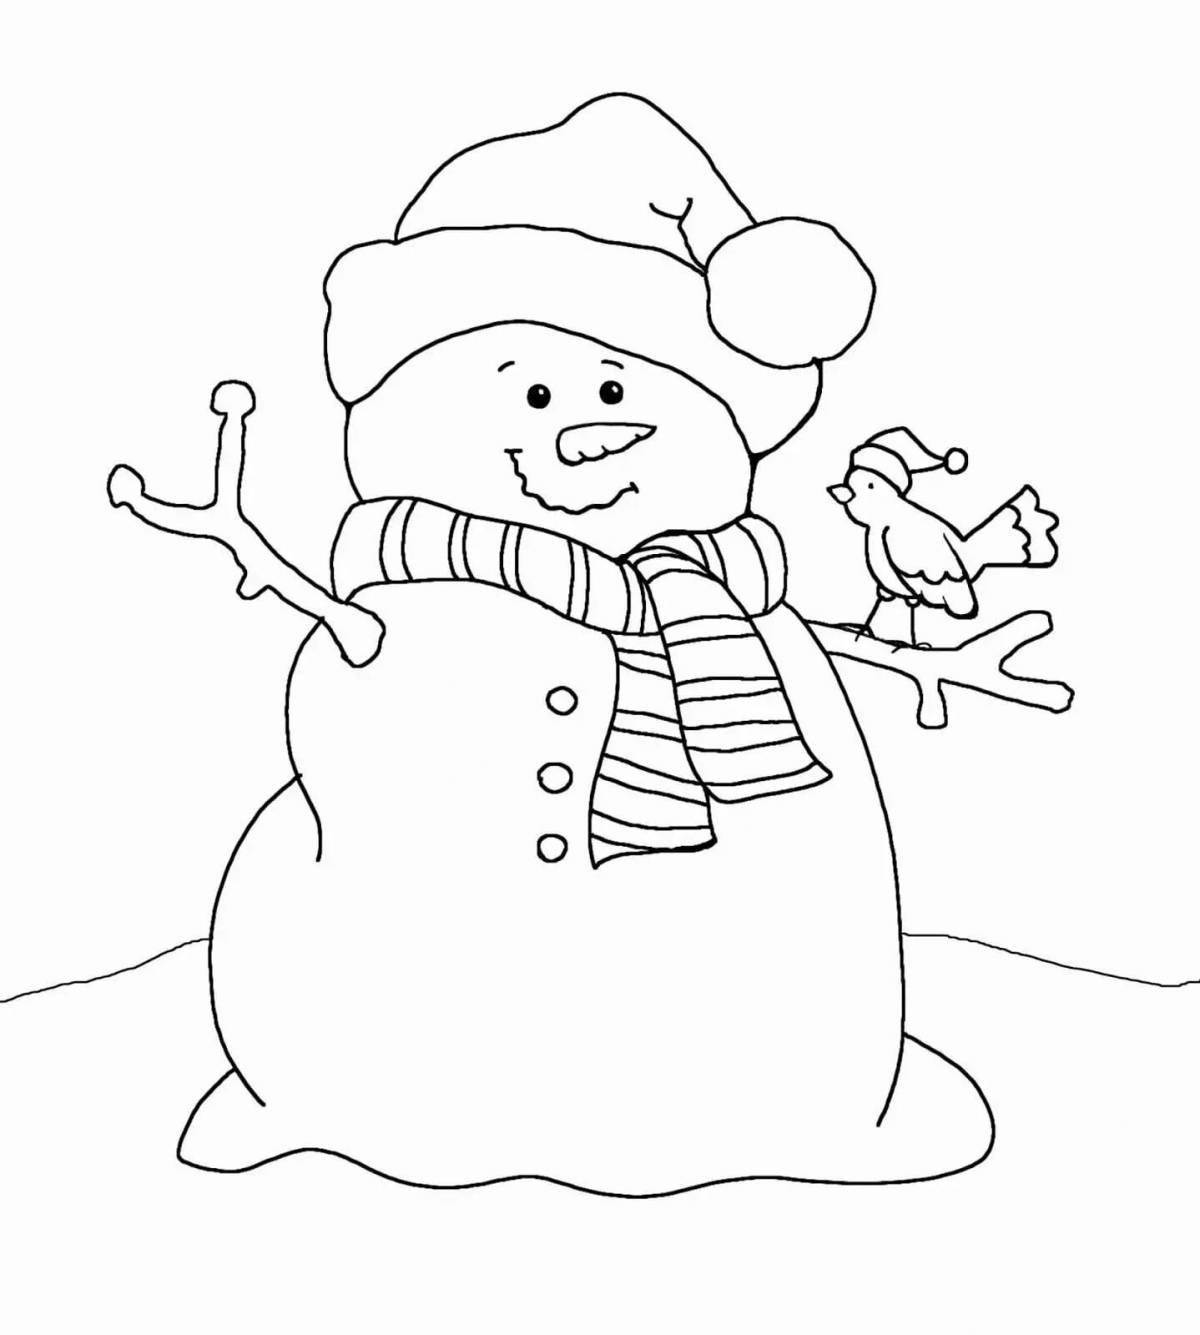 Праздничная открытка-раскраска снеговик